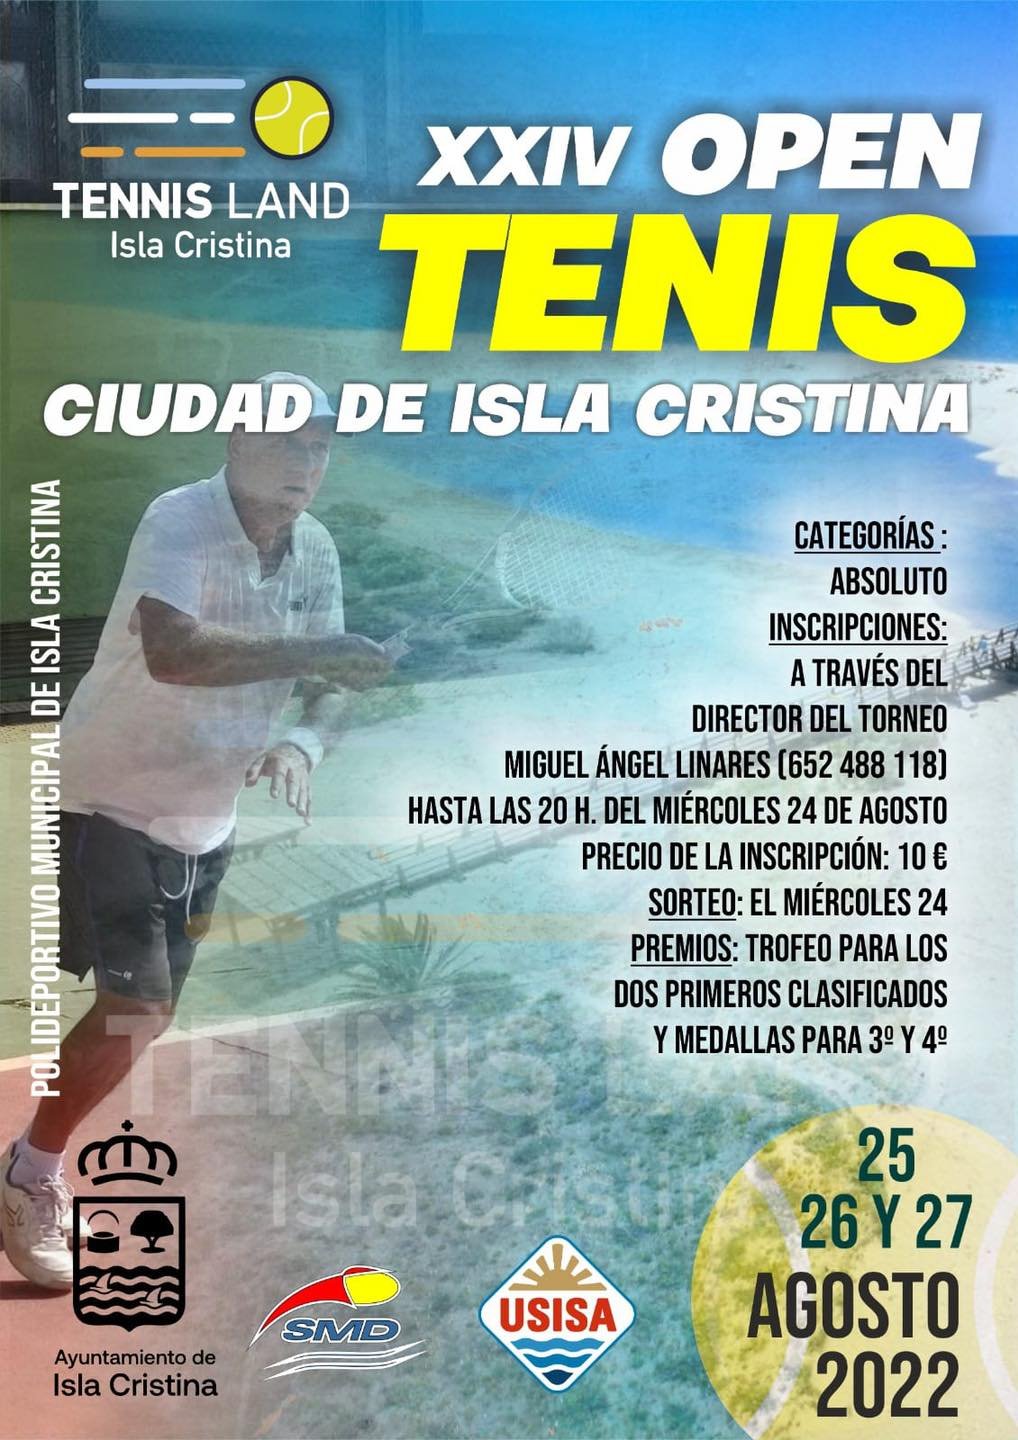 XXIV Open de Tenis “Ciudad de Isla Cristina”